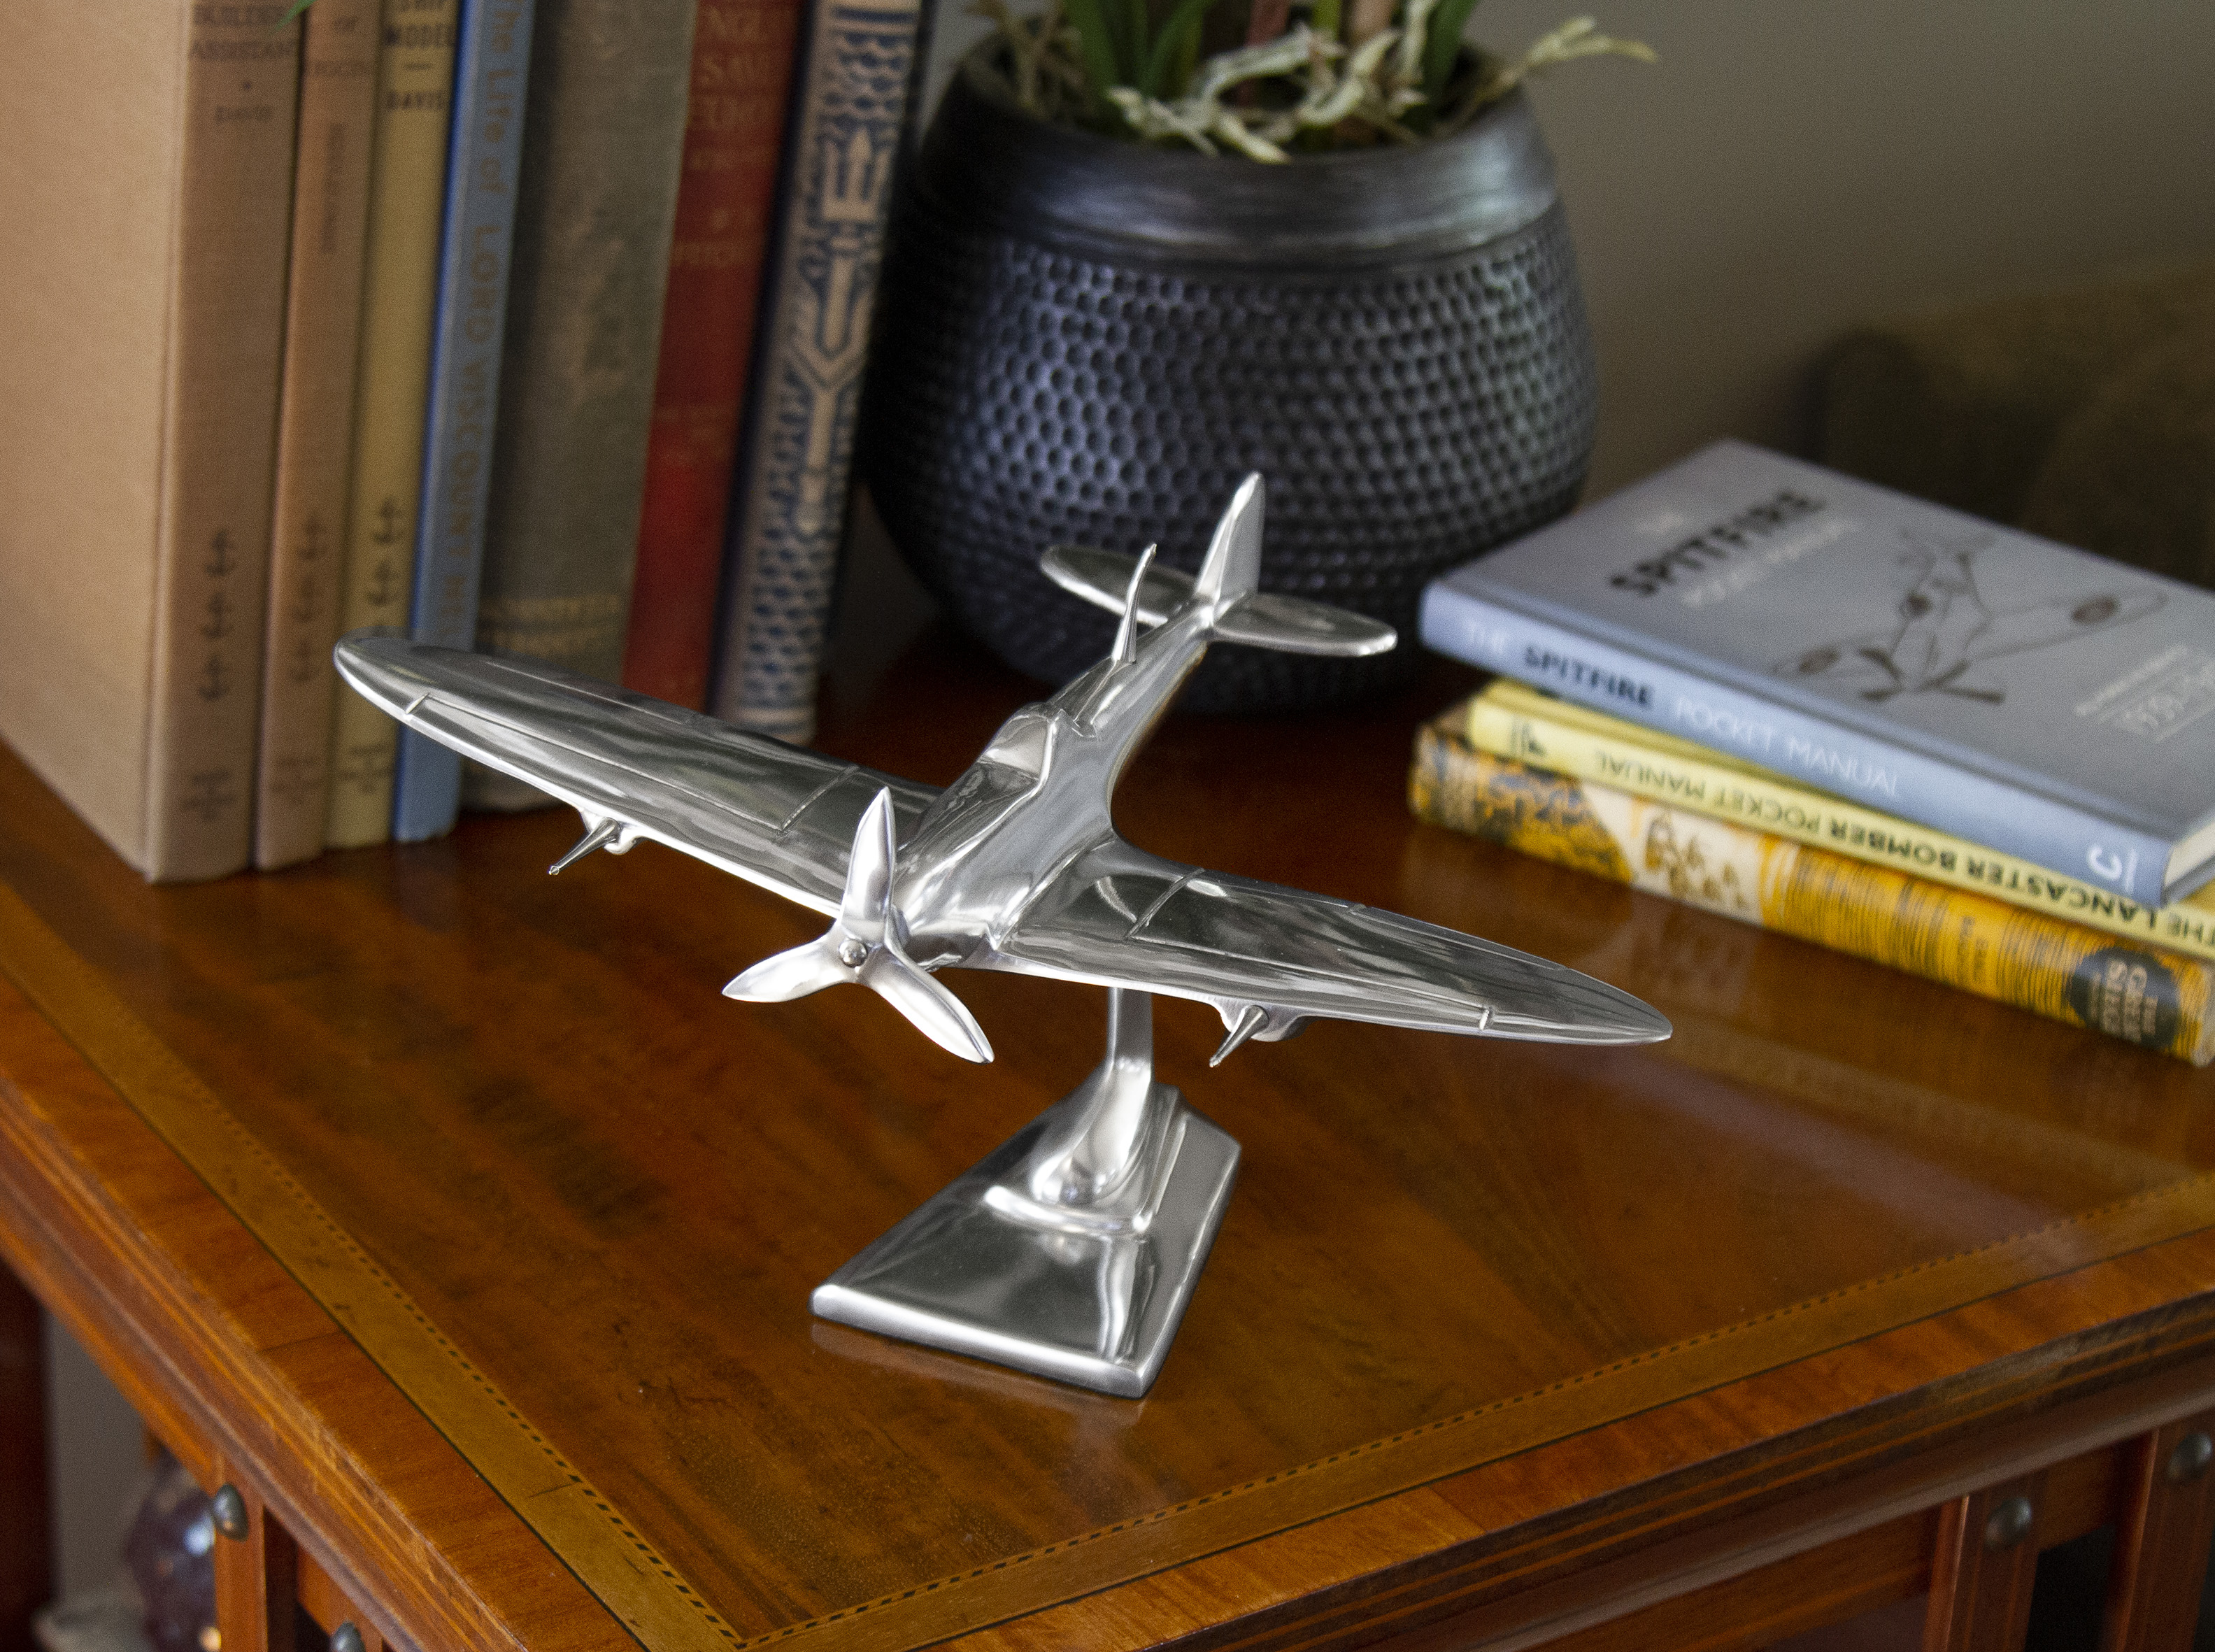 Supermarine Spitfire desk model